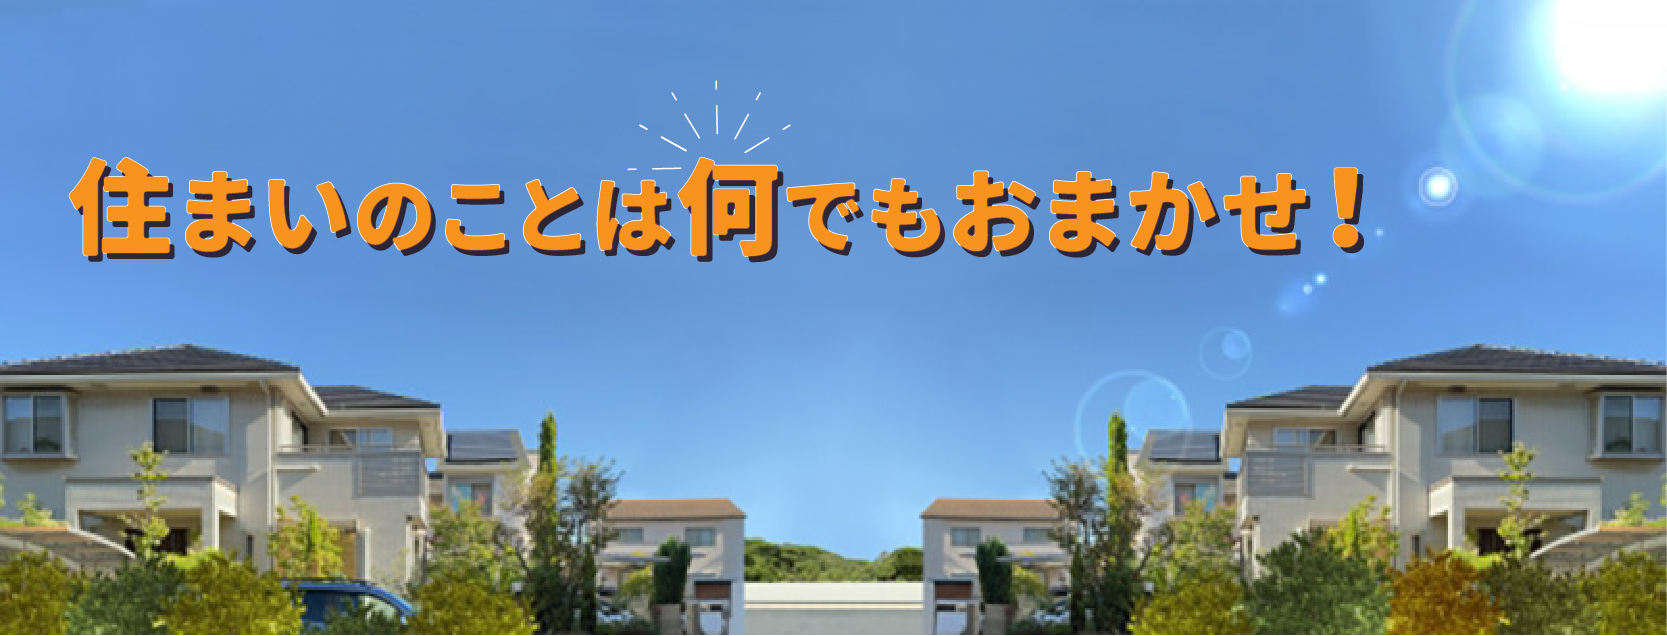 静岡県浜松市の石川瓦工業有限会社は地元密着のプロフェッショナルです。